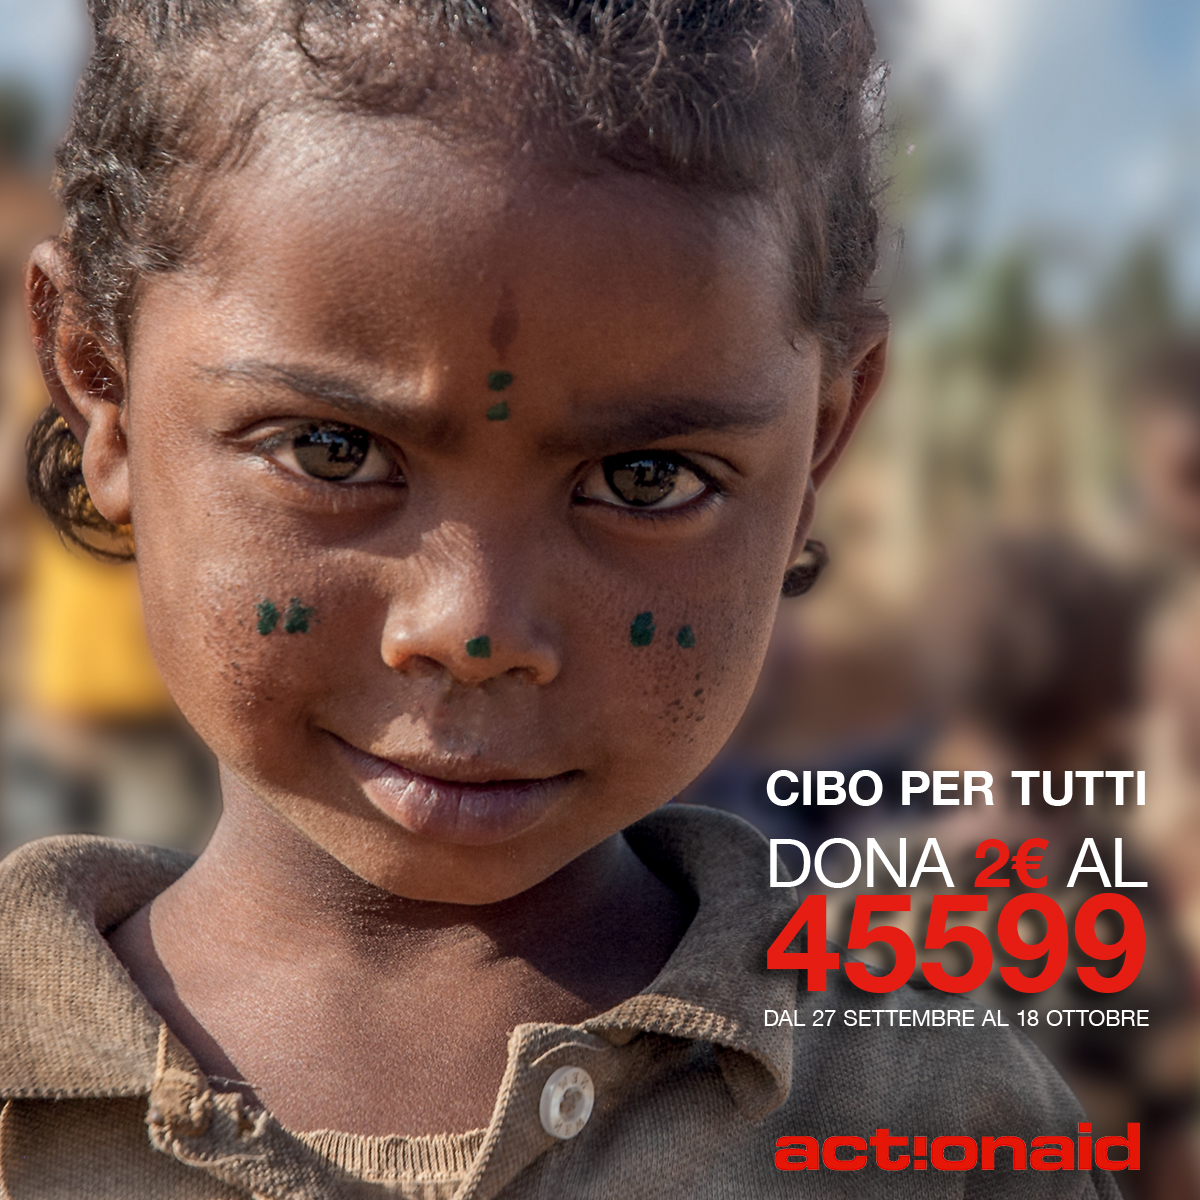 Diritto al cibo: ActionAid lancia la grande campagna CIBO PER TUTTI, perché cambiare gli squilibri del sistema alimentare si può! Dona al 45599 